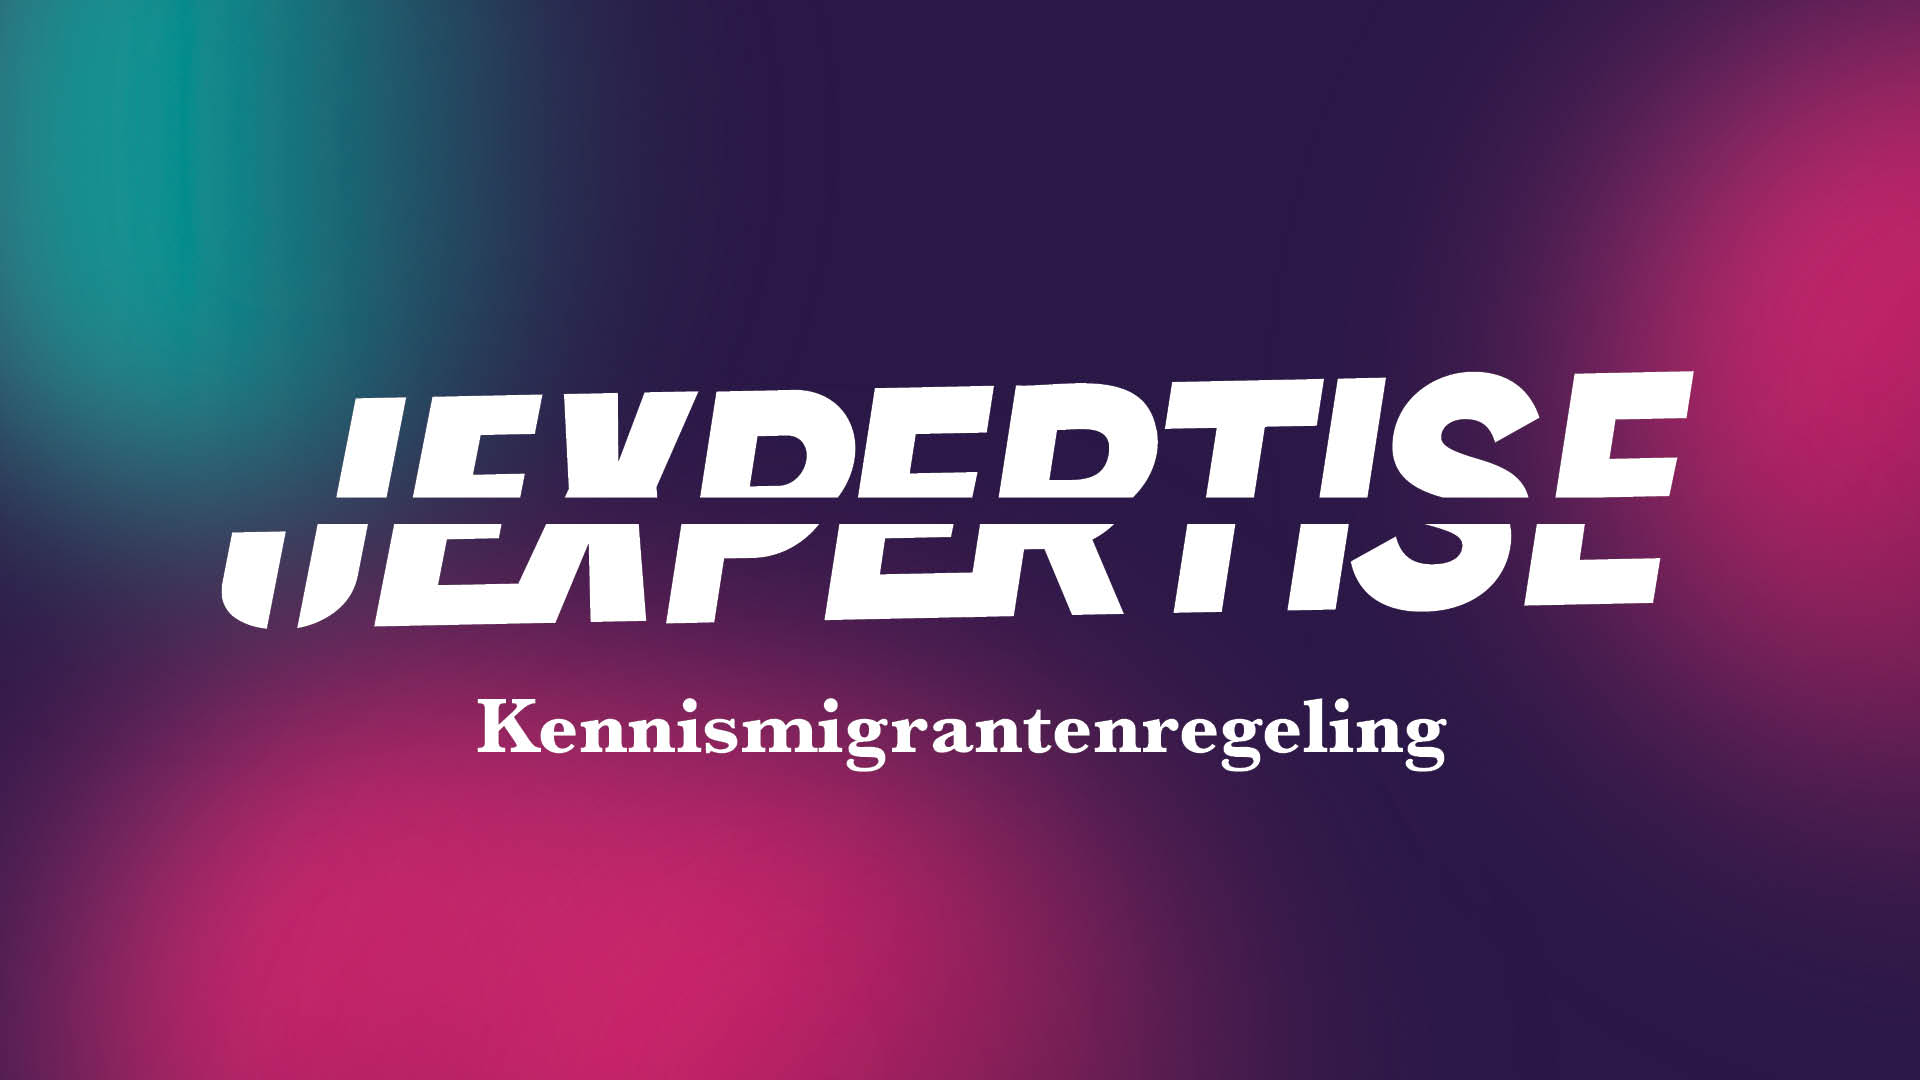 10 Website_Jexpertise_Kennismigrantenregeling